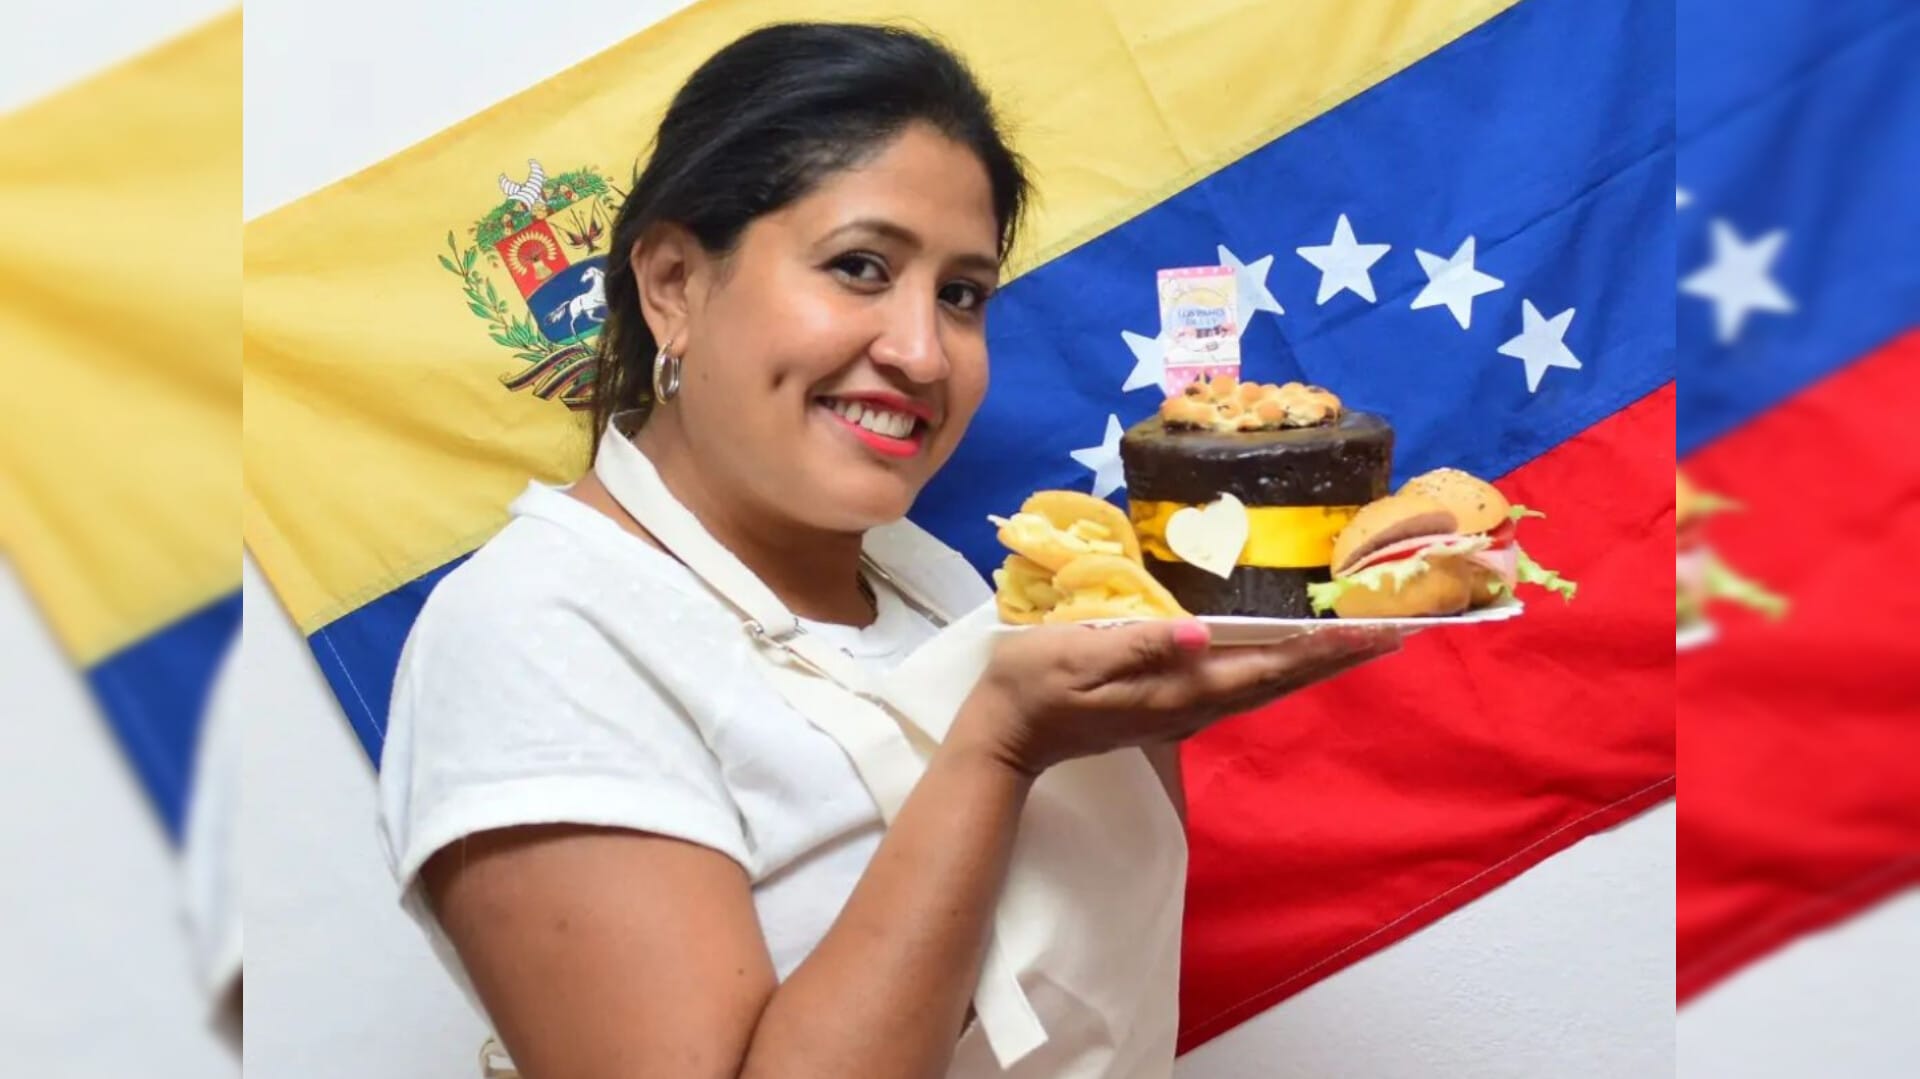 Venezolana enamora paladares en Argentina con el inigualable sabor de los cachitos (Video)